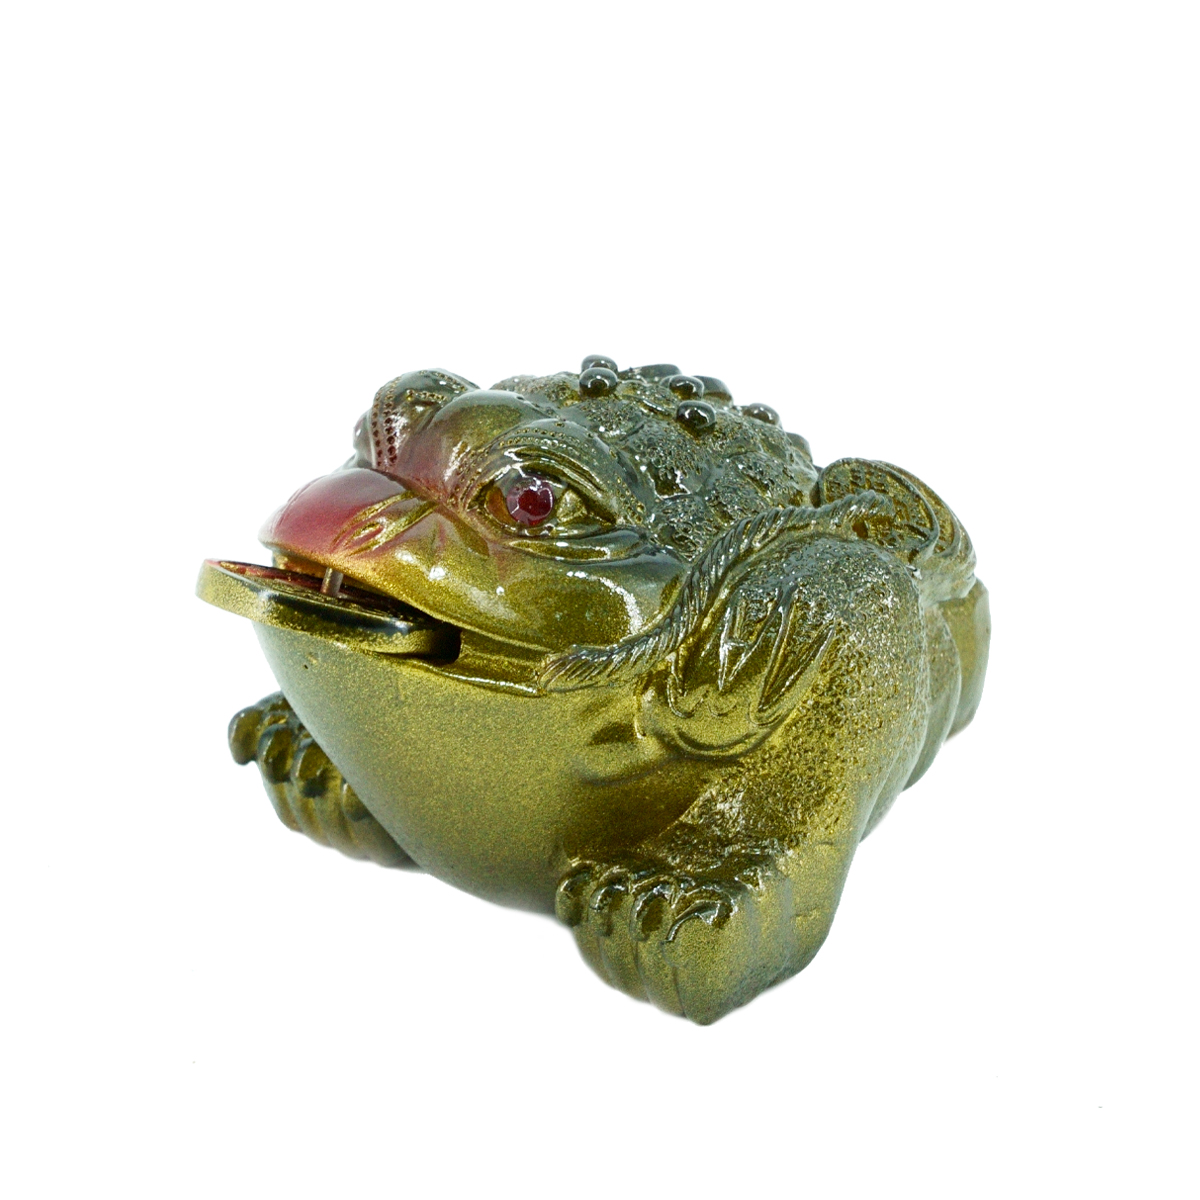 Чайная игрушка "Малая жаба с красным носом". Цена: 1 070 ₽ руб.